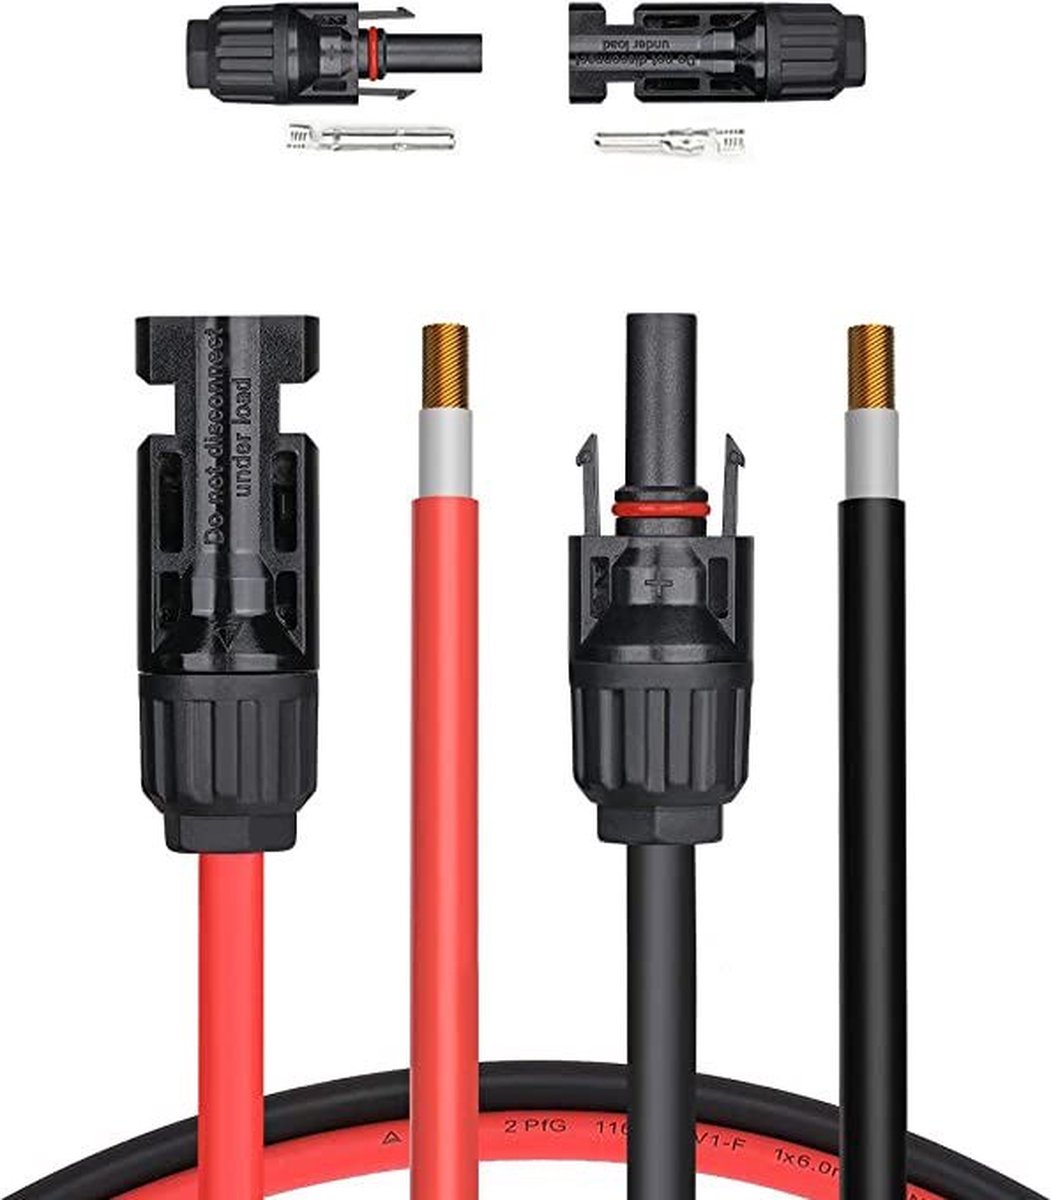 Câble De Rallonge Pour Panneau Solaire Avec Connecteur Mc4 Rouge + Noir Jeu  De 2 Pièces, 3M